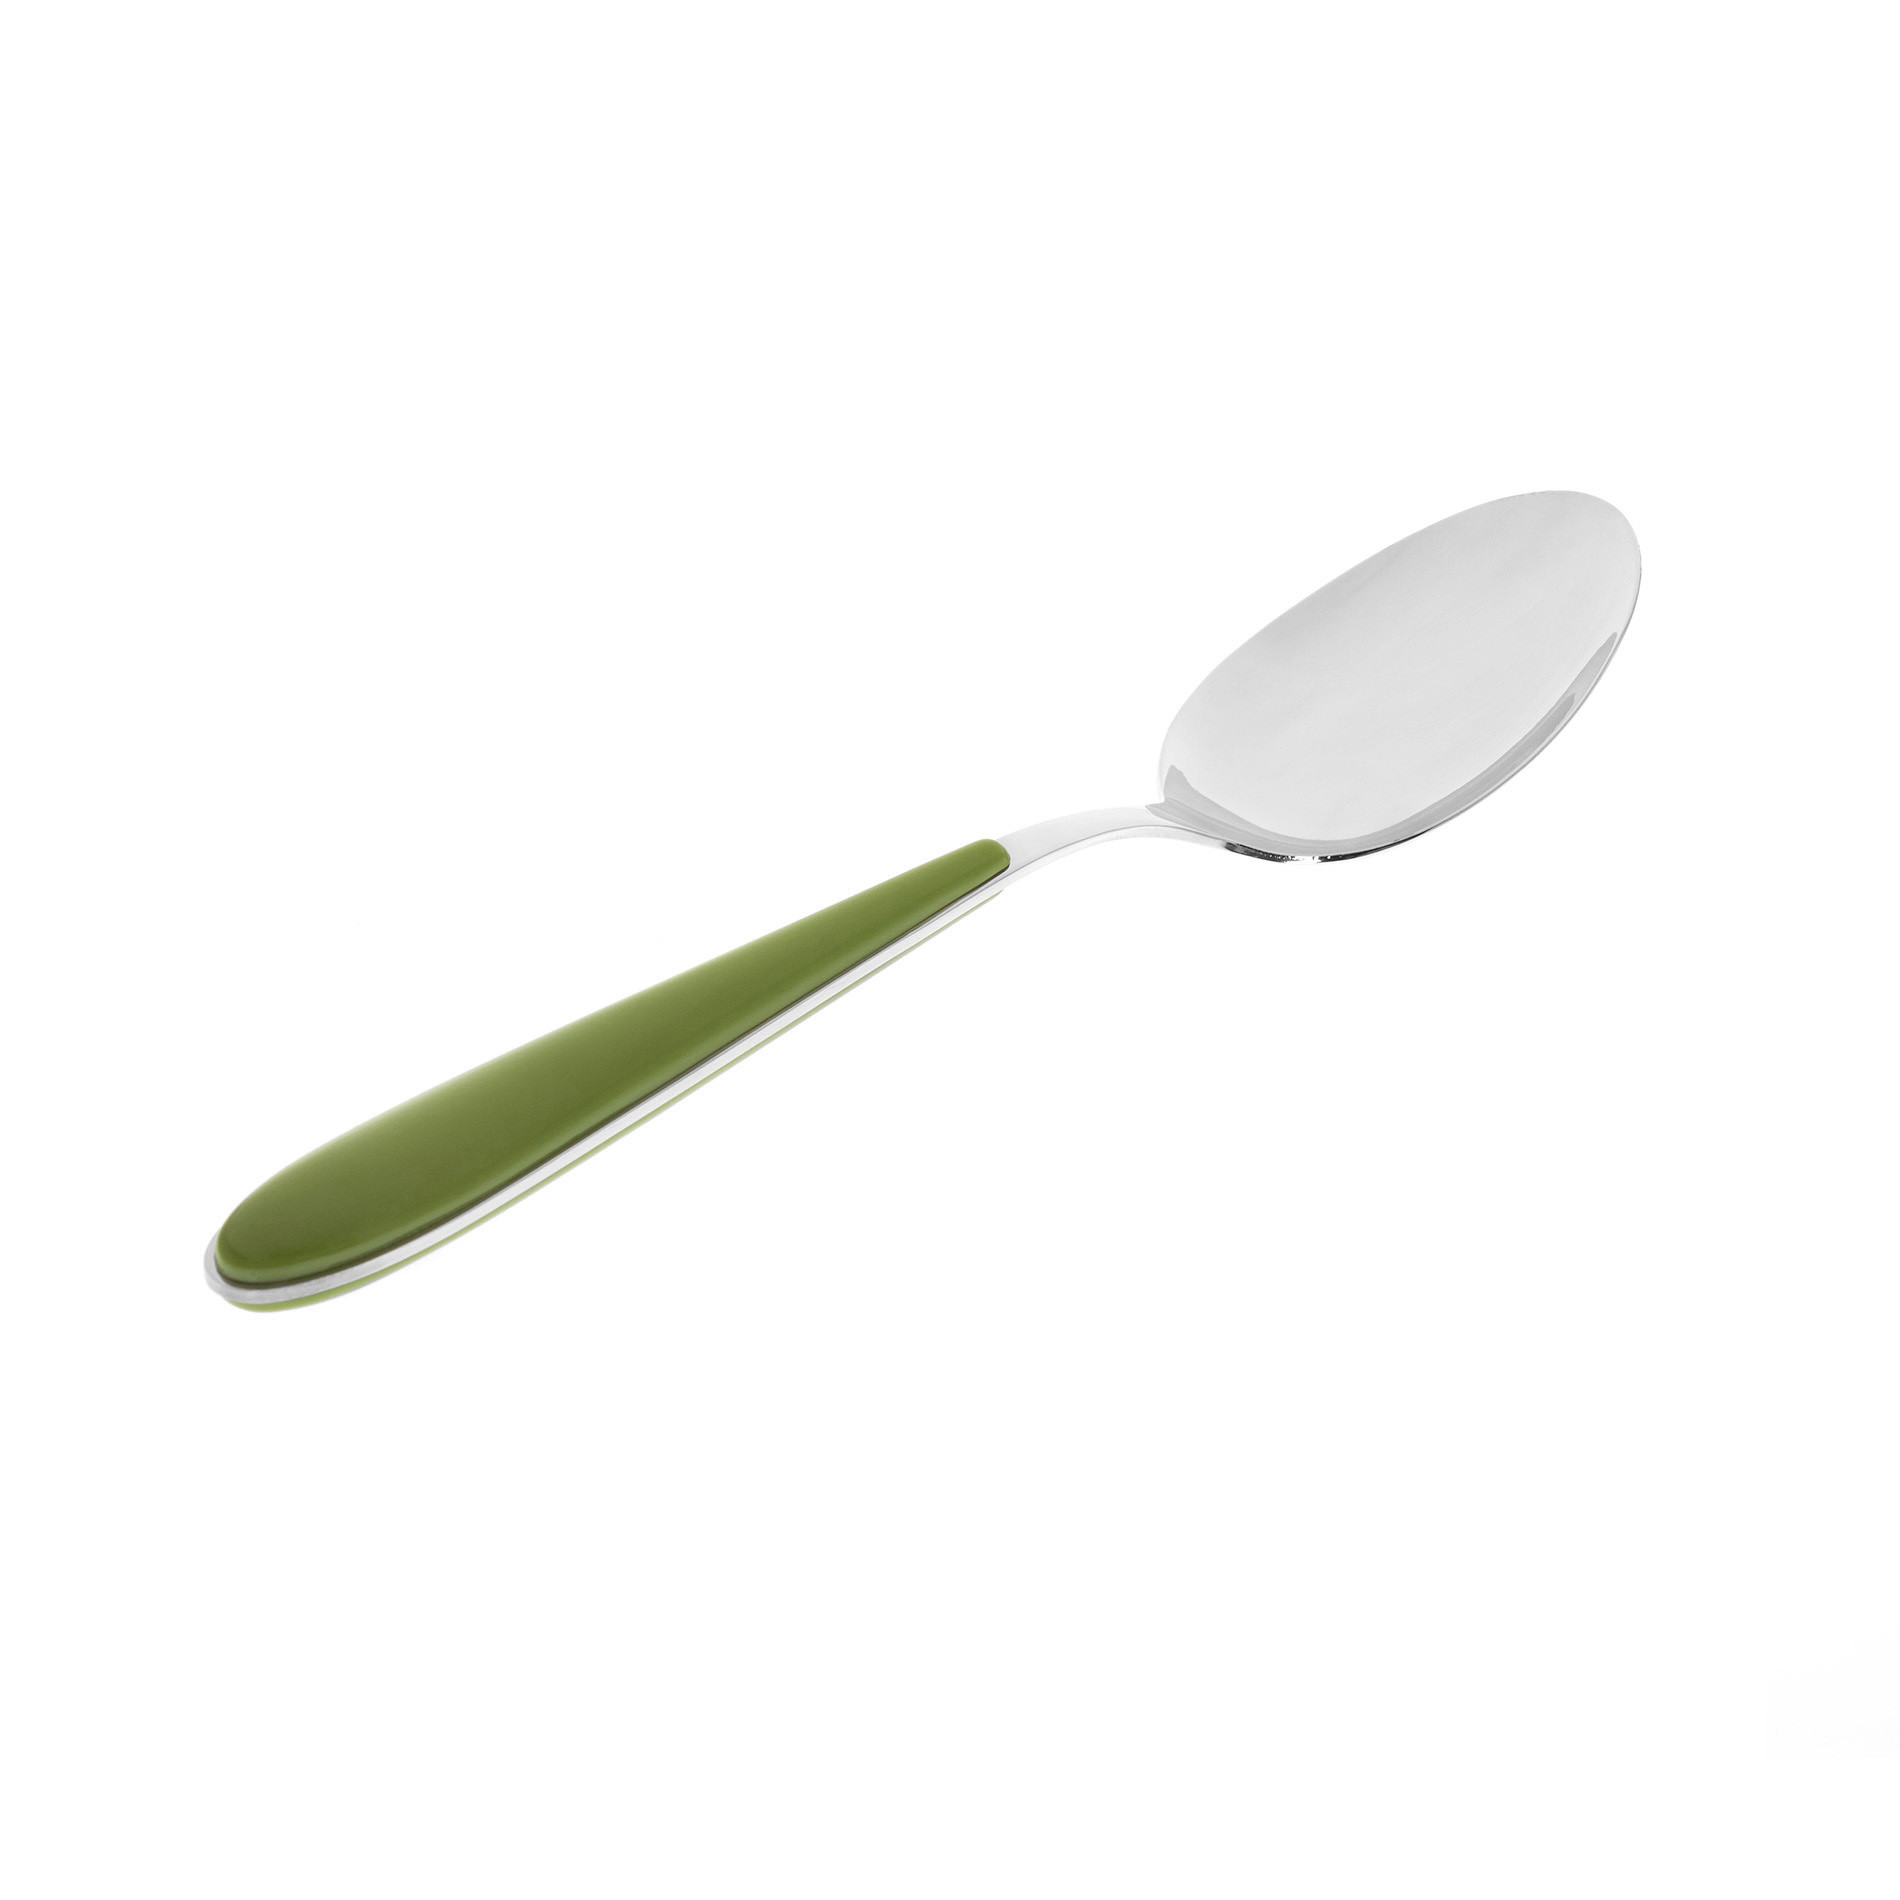 Cucchiaio acciaio inox e plastica, Verde, large image number 0